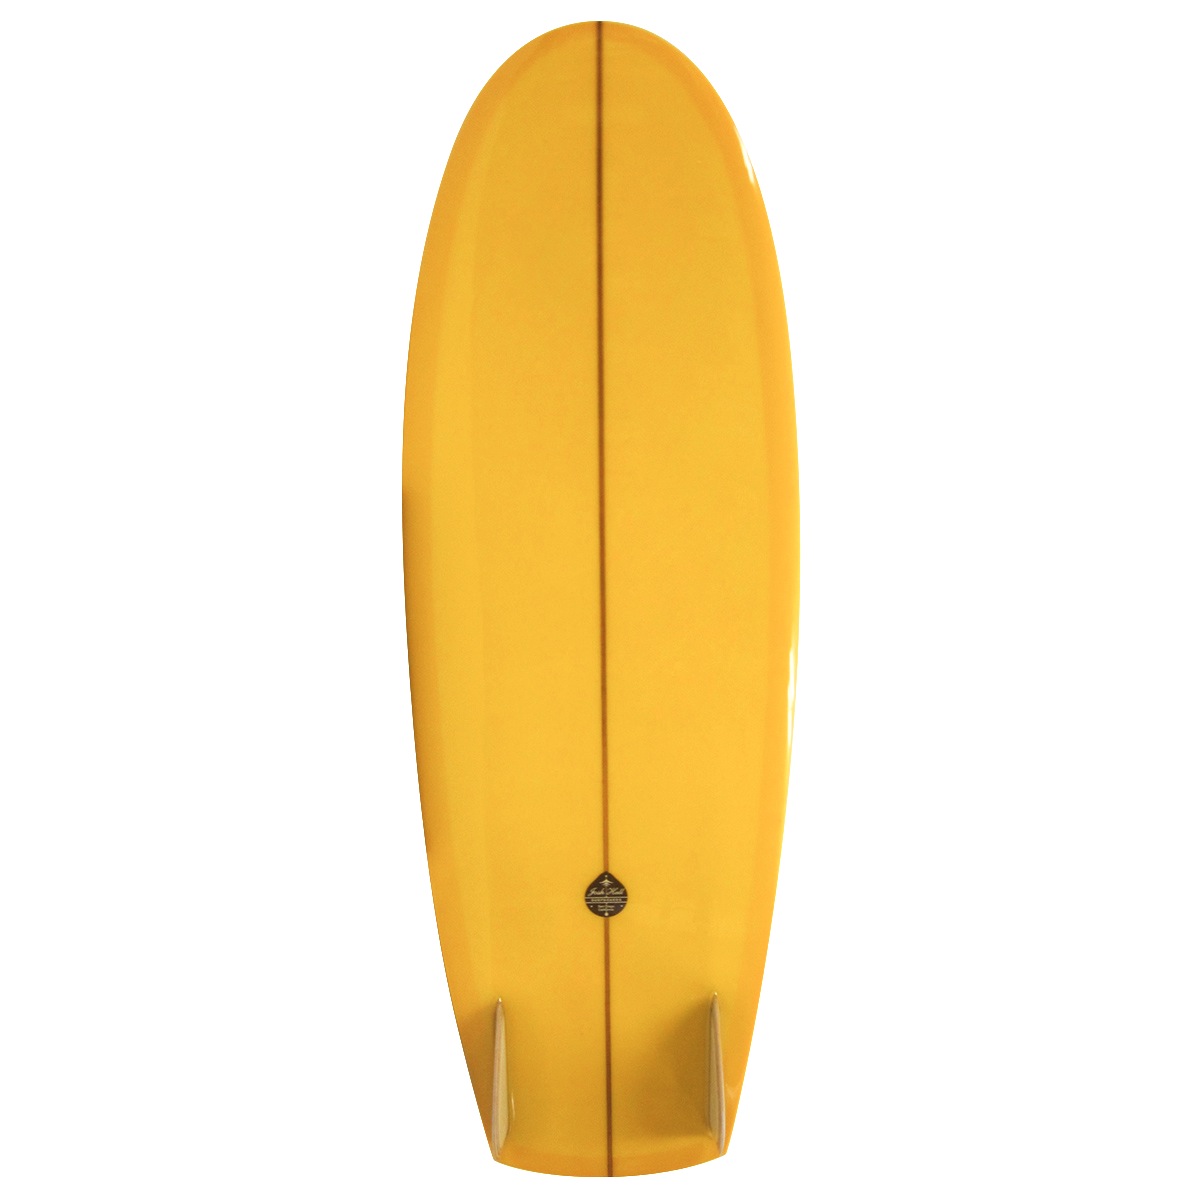  Josh Hall Surfboards / PESCADO HINCHADO VELO 5`3